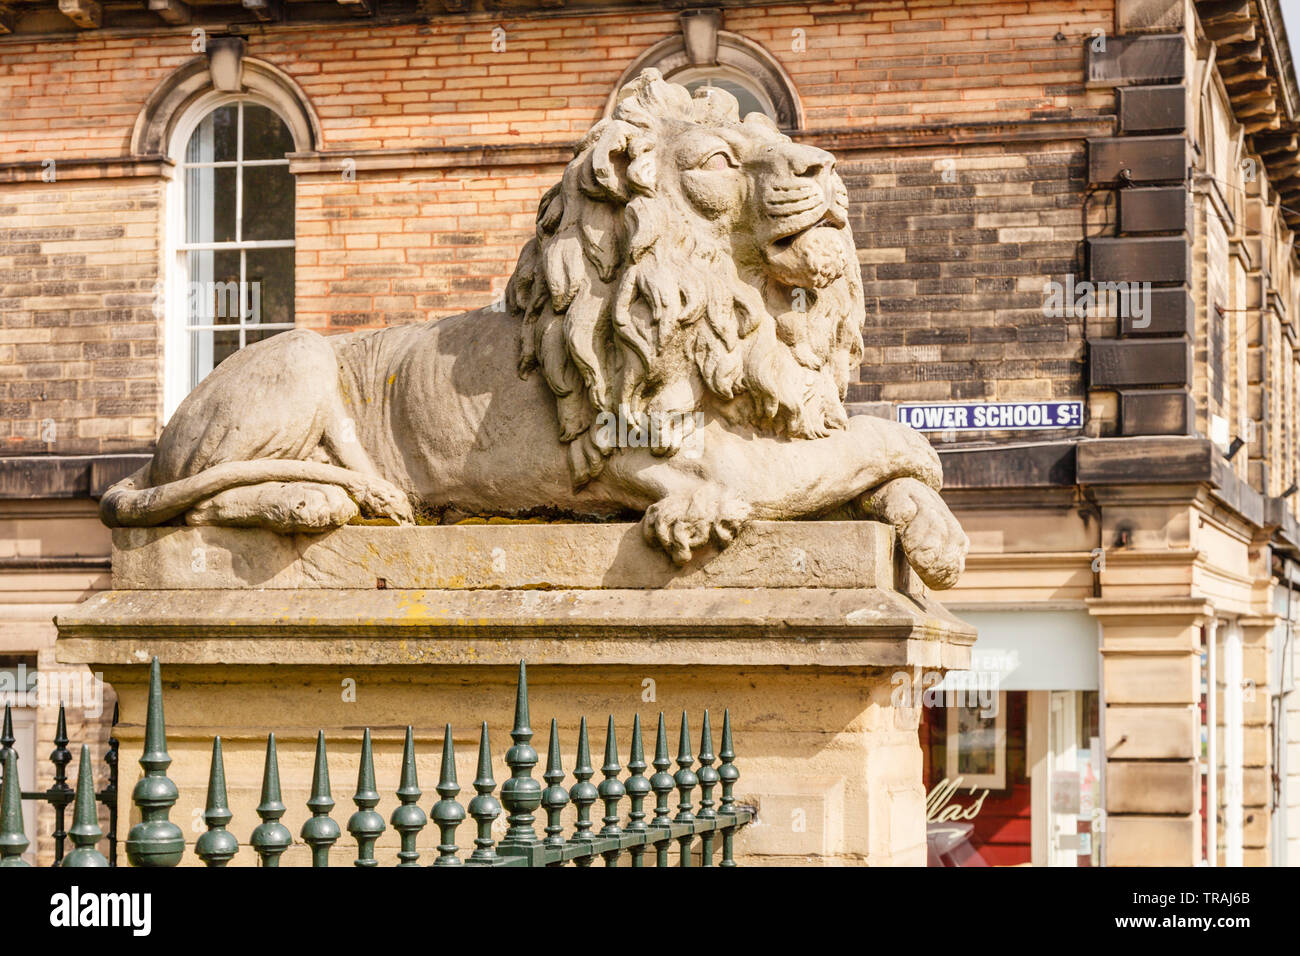 Wachsamkeit, einer der beiden Löwen Skulpturen außerhalb der Fabrik Schule in Saltaire, Bradford, West Yorkshire Stockfoto